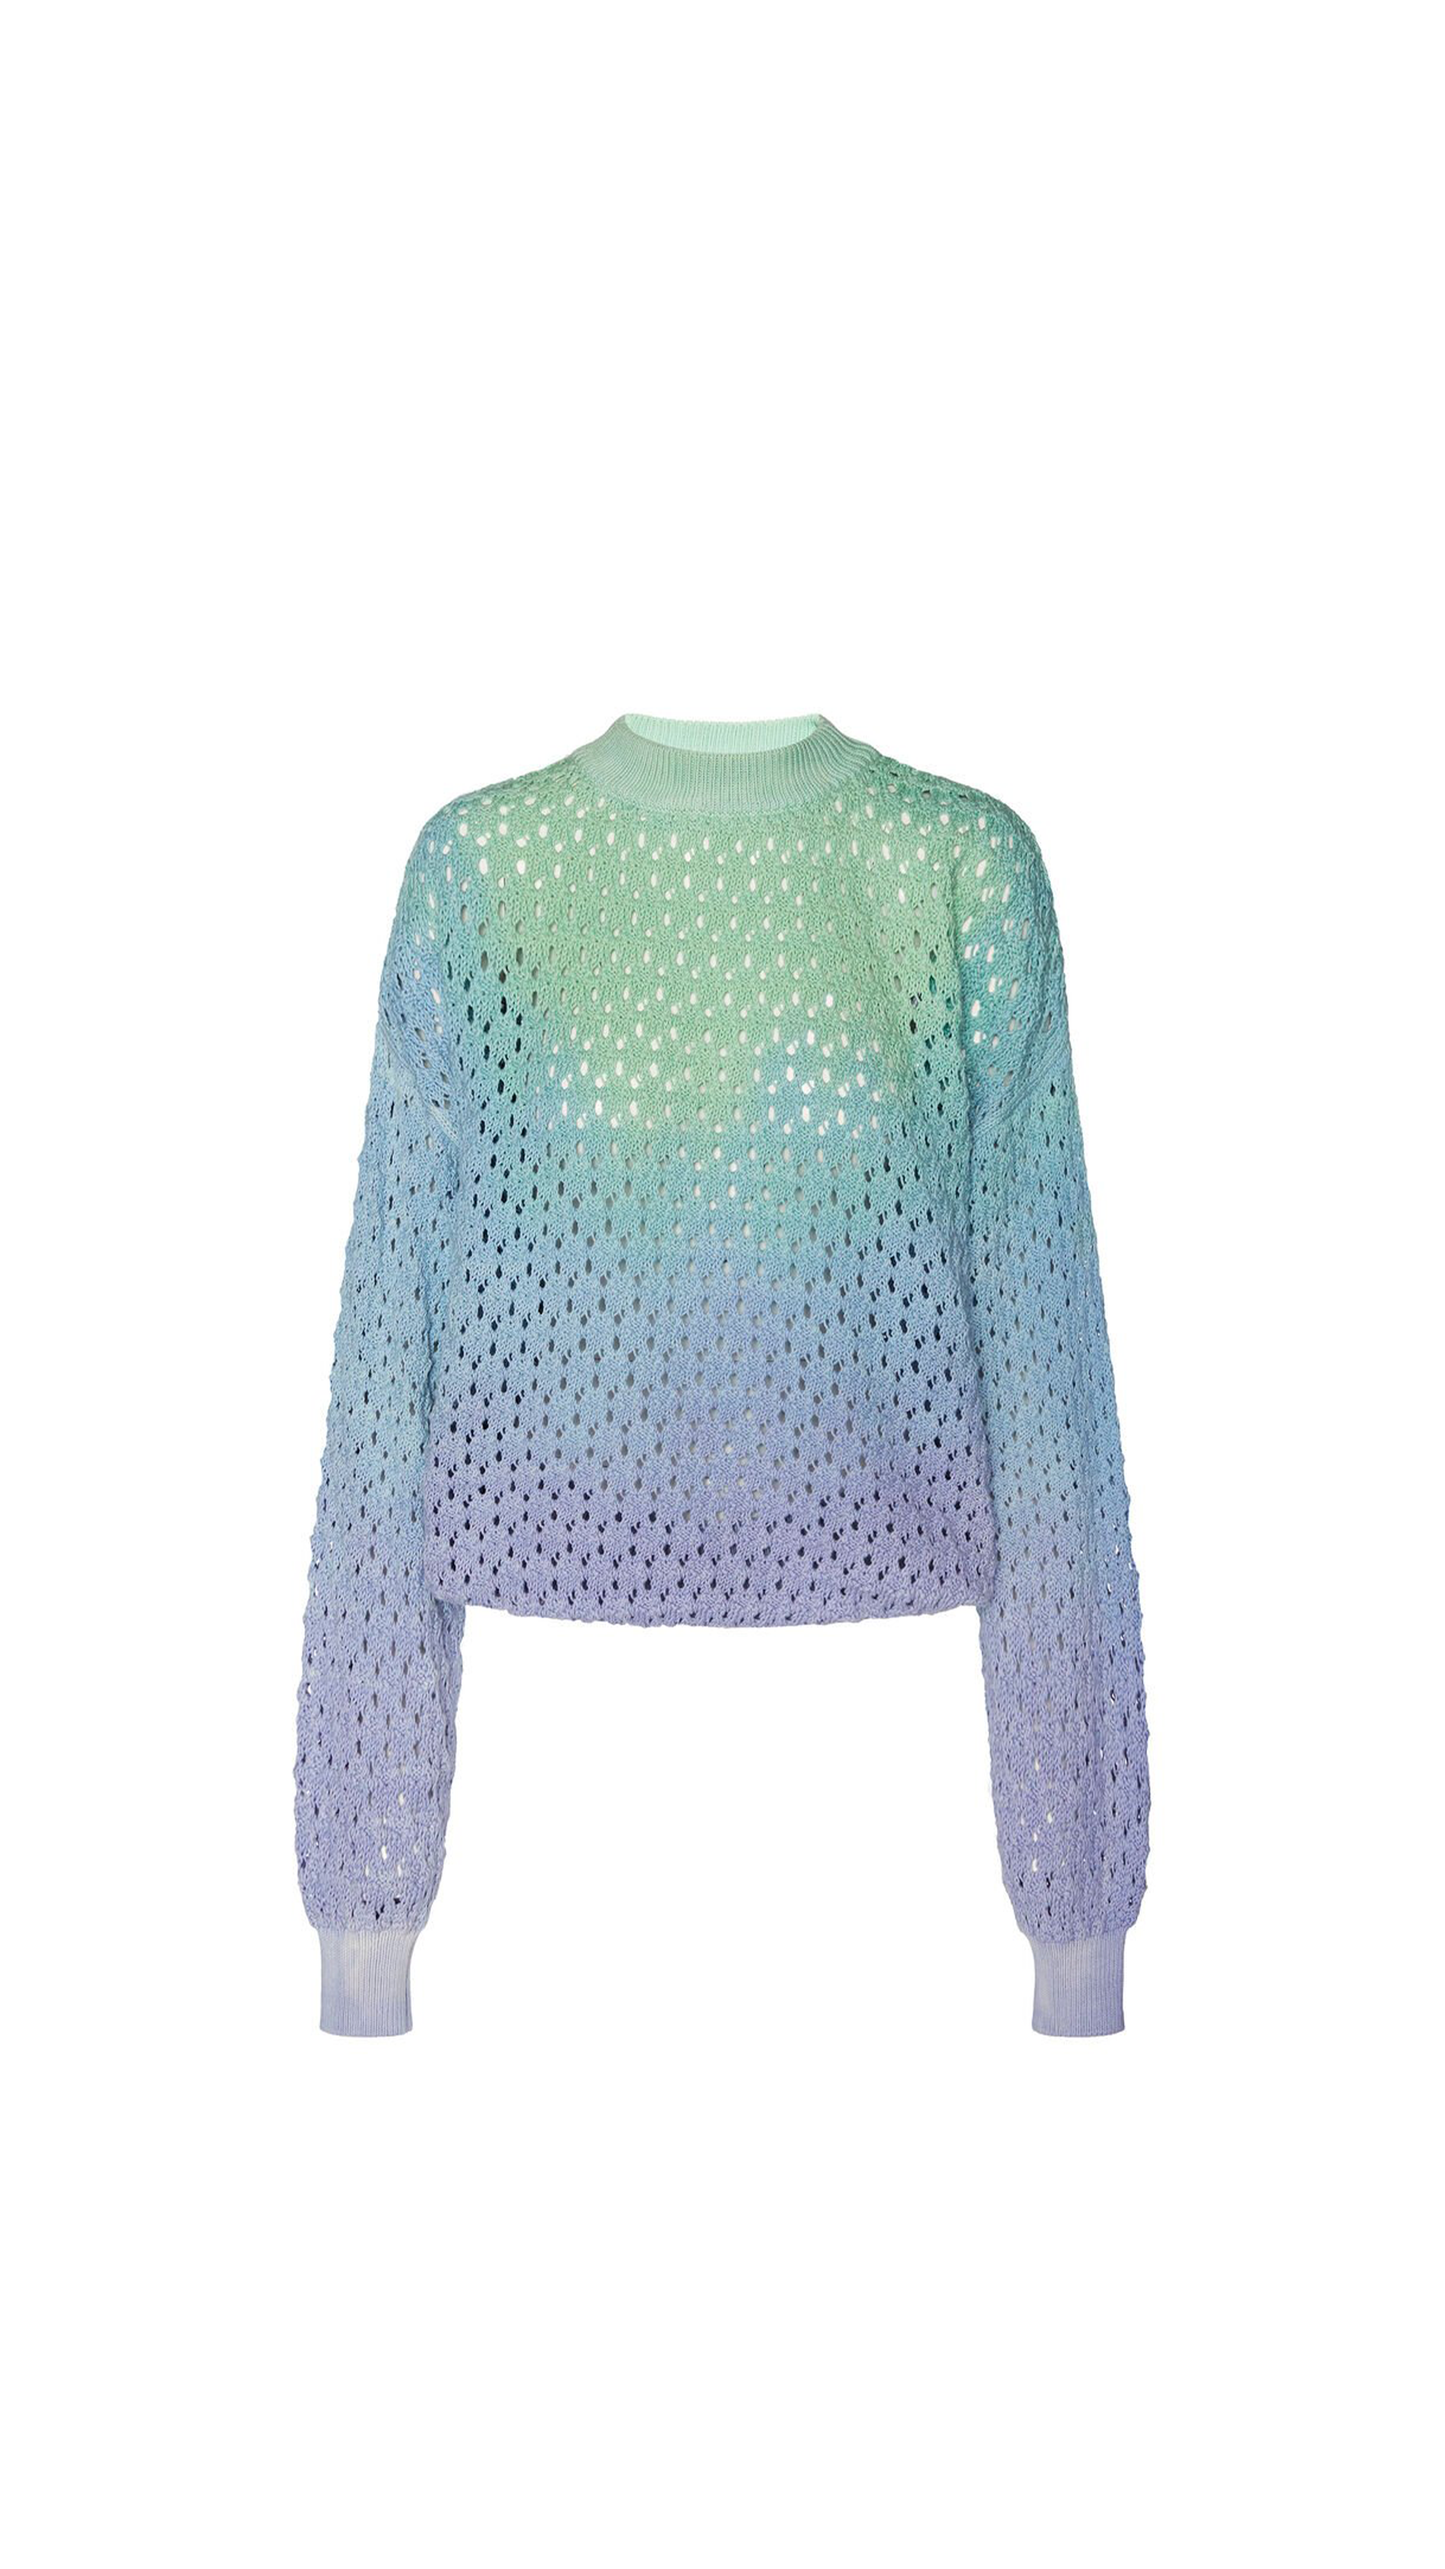 Tie-dye Sweater in Cotton Crochet - Violet / Blue